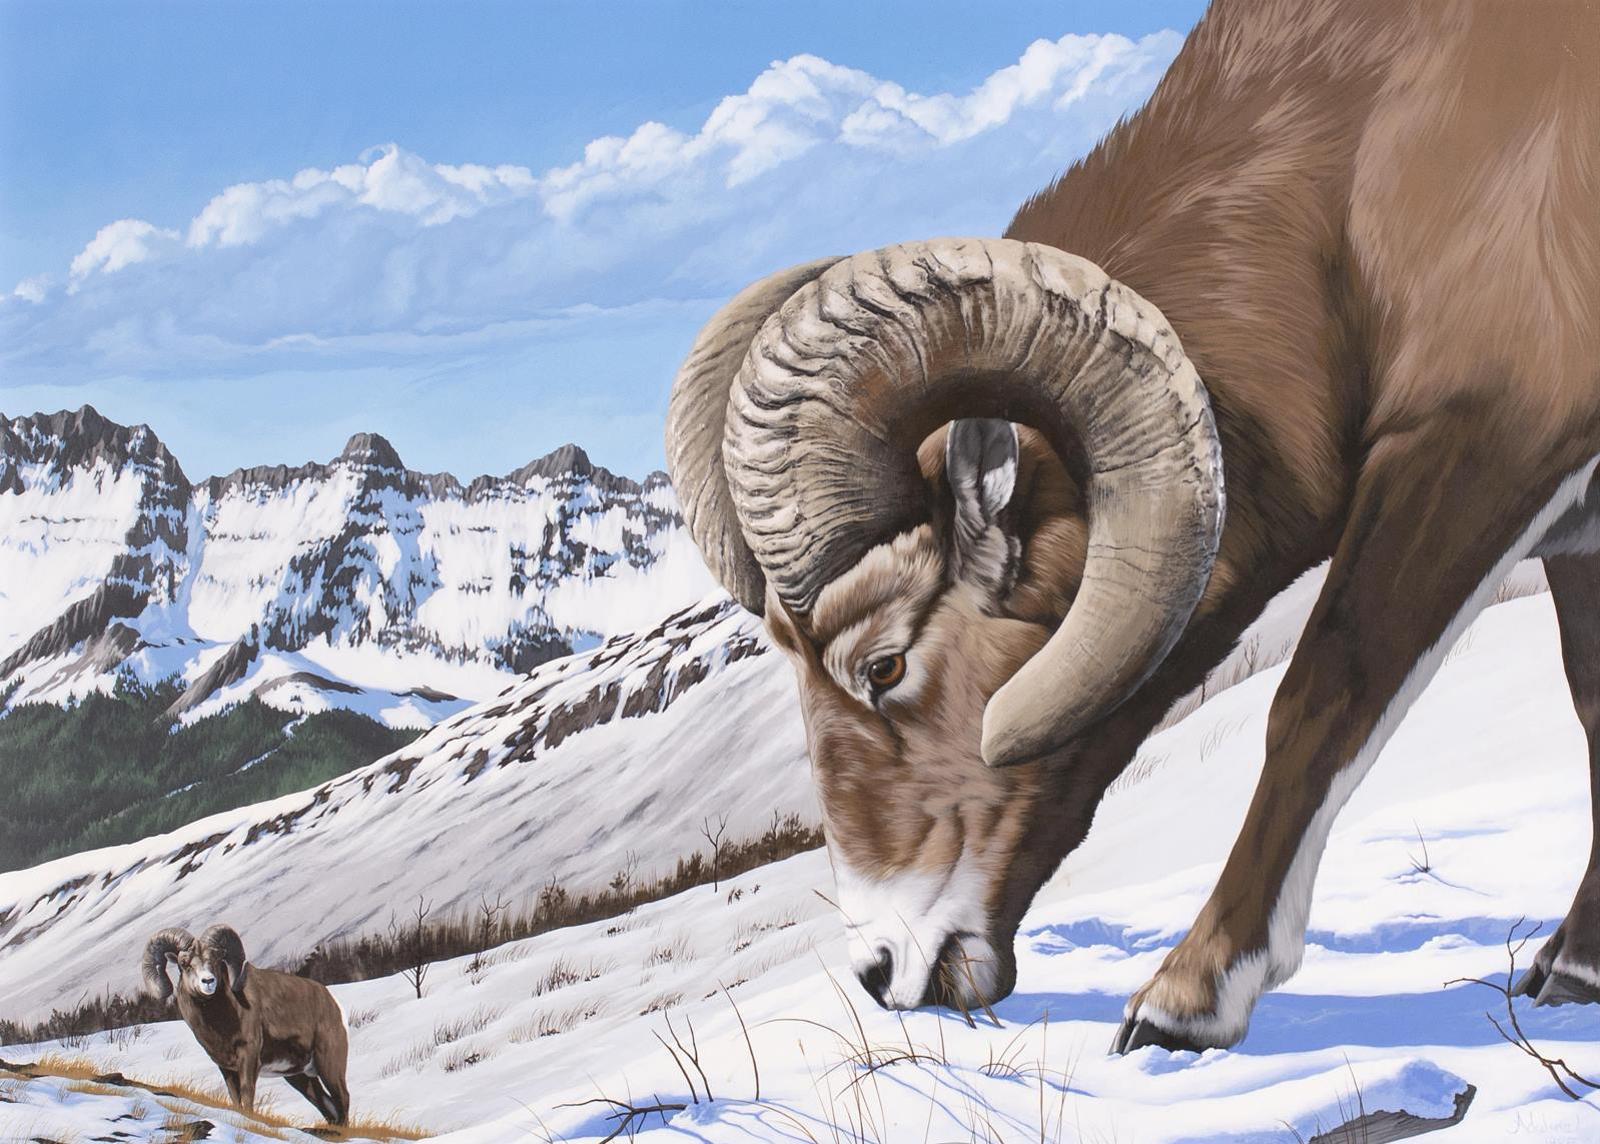 Adeline Halvorson (1957) - Bighorn Sheep In The High Alpine; 1985